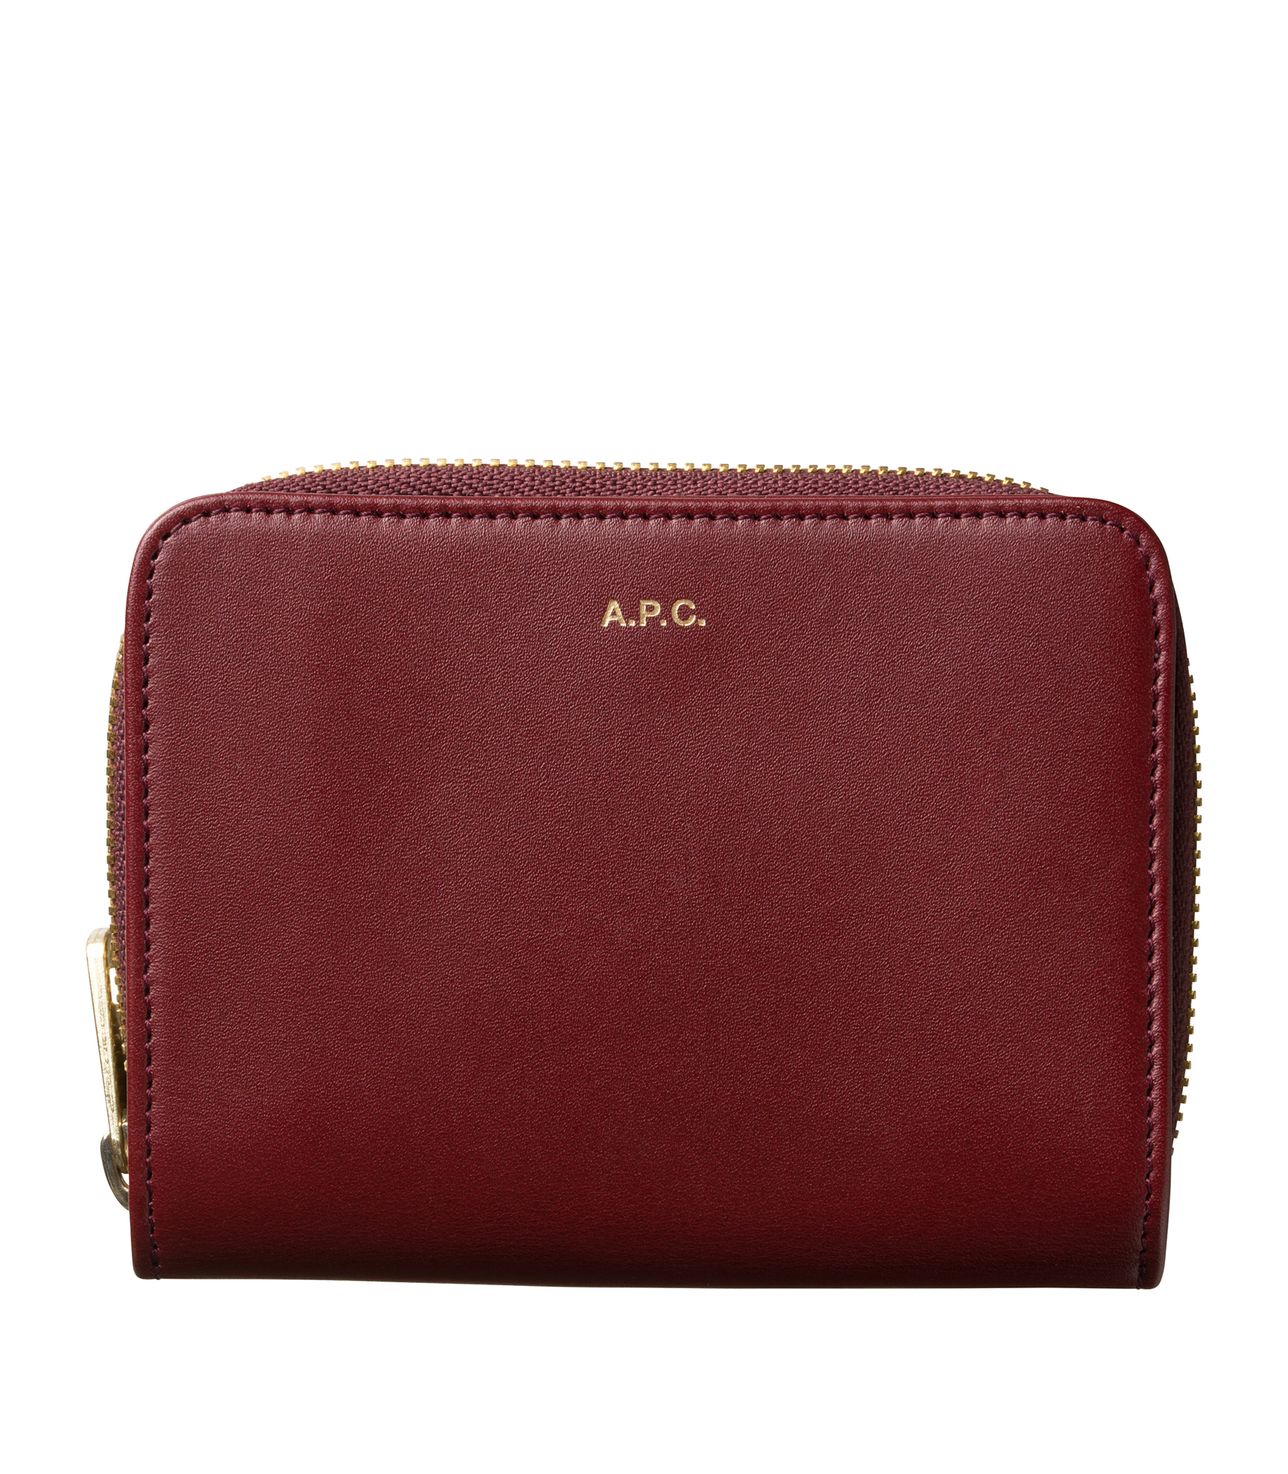 Emmanuelle compact wallet VINO APC